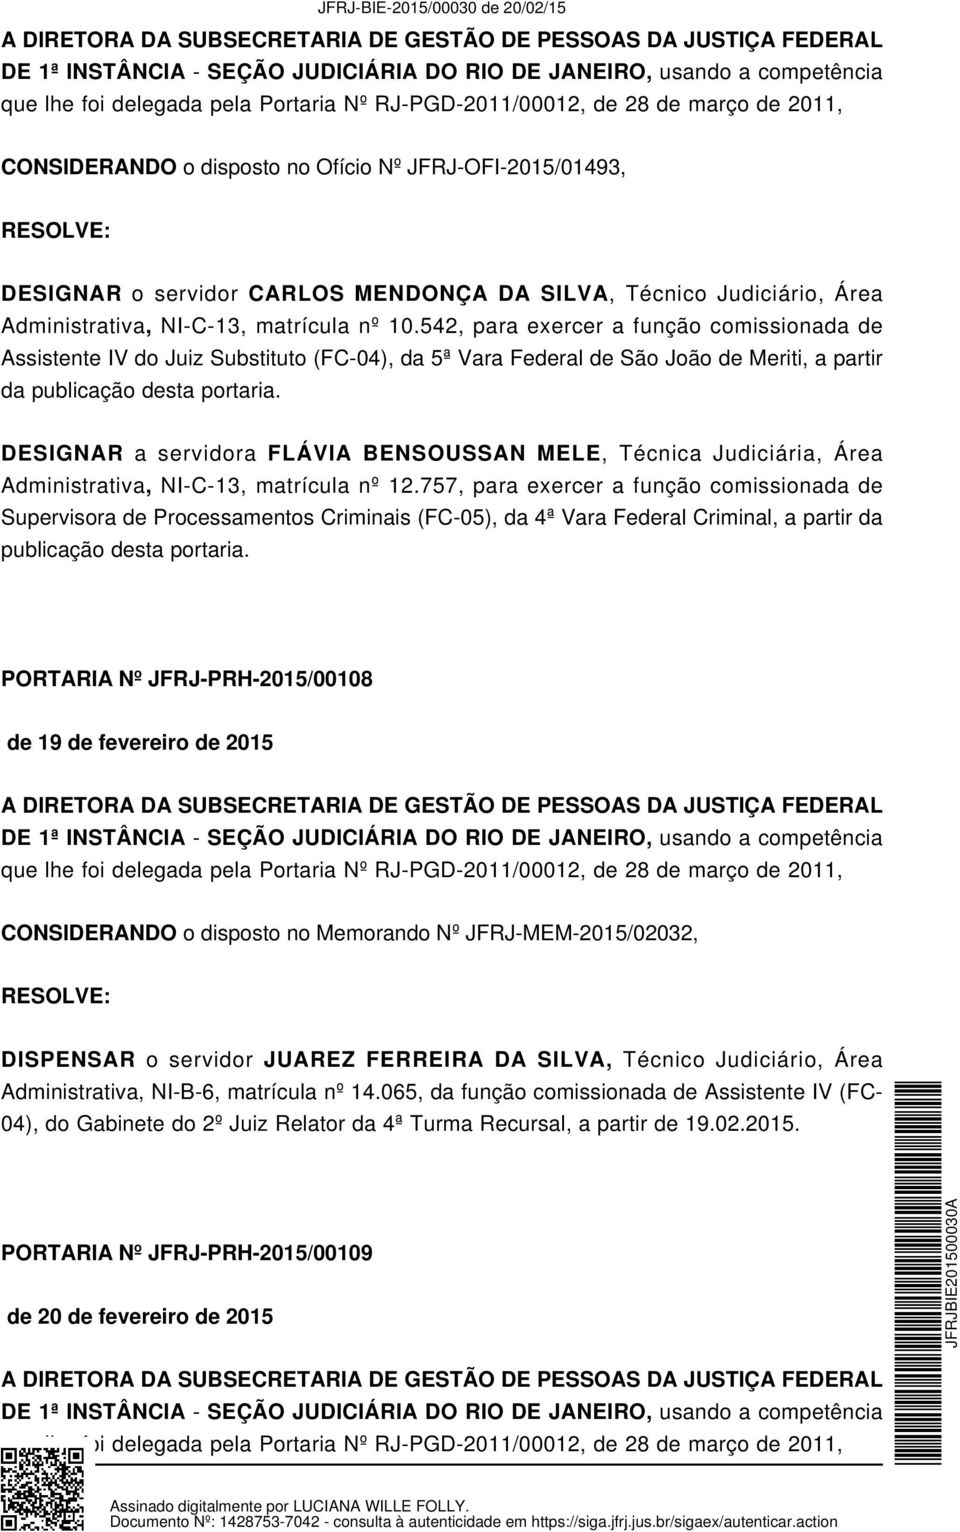 542, para exercer a função comissionada de Assistente IV do Juiz Substituto (FC-04), da 5ª Vara Federal de São João de Meriti, a partir da publicação desta portaria.